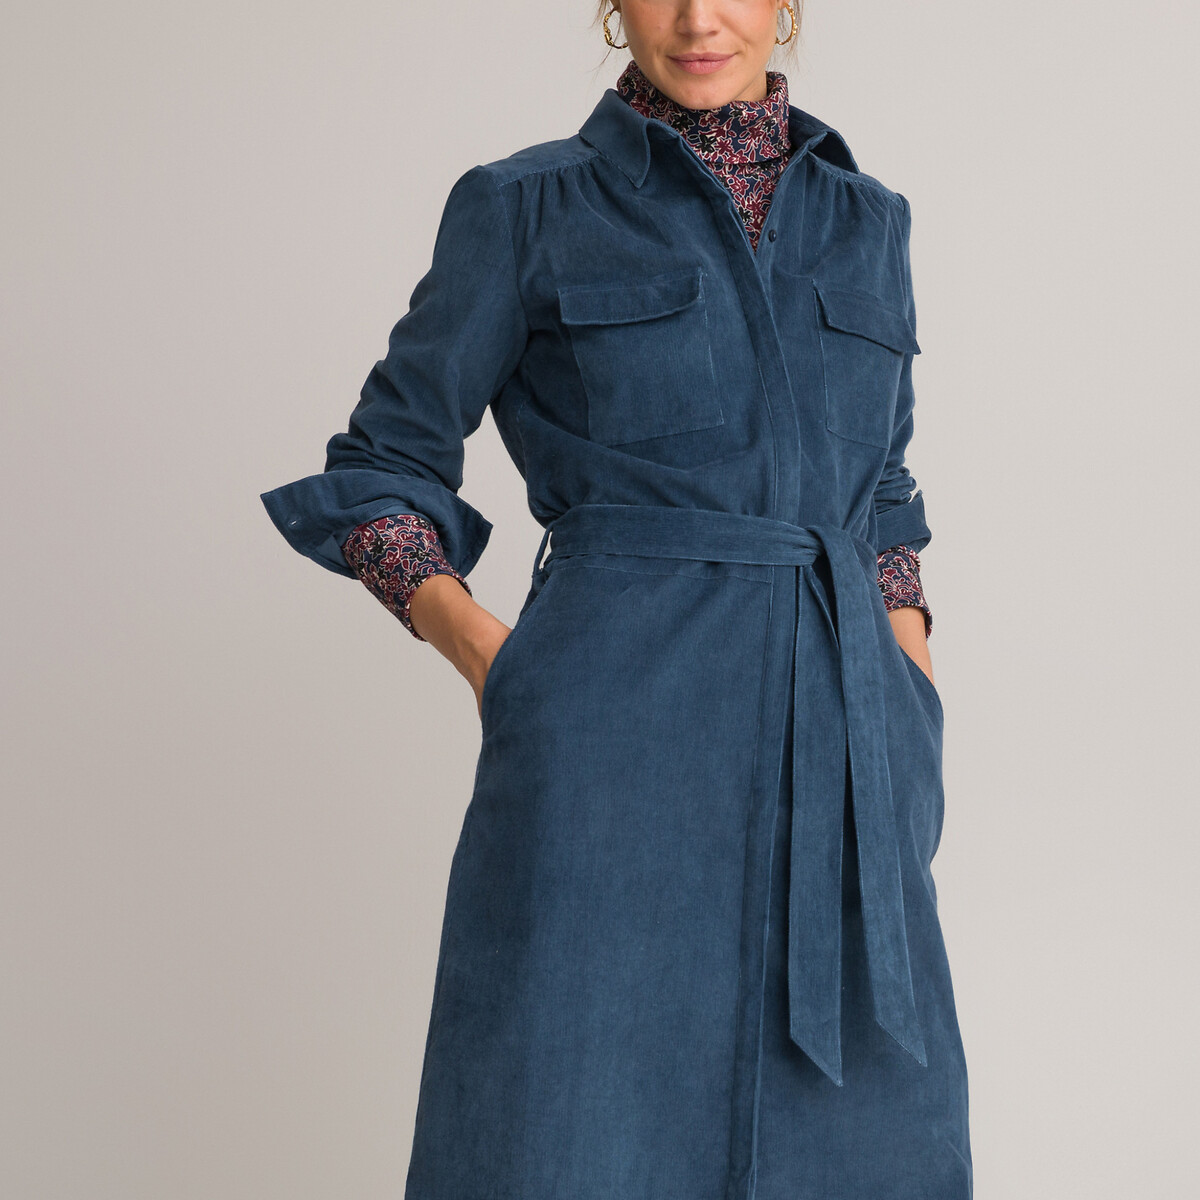 Платье ANNE WEYBURN Платье Длинное расклешенное из бархата с длинными рукавами 48 синий, размер 48 - фото 1